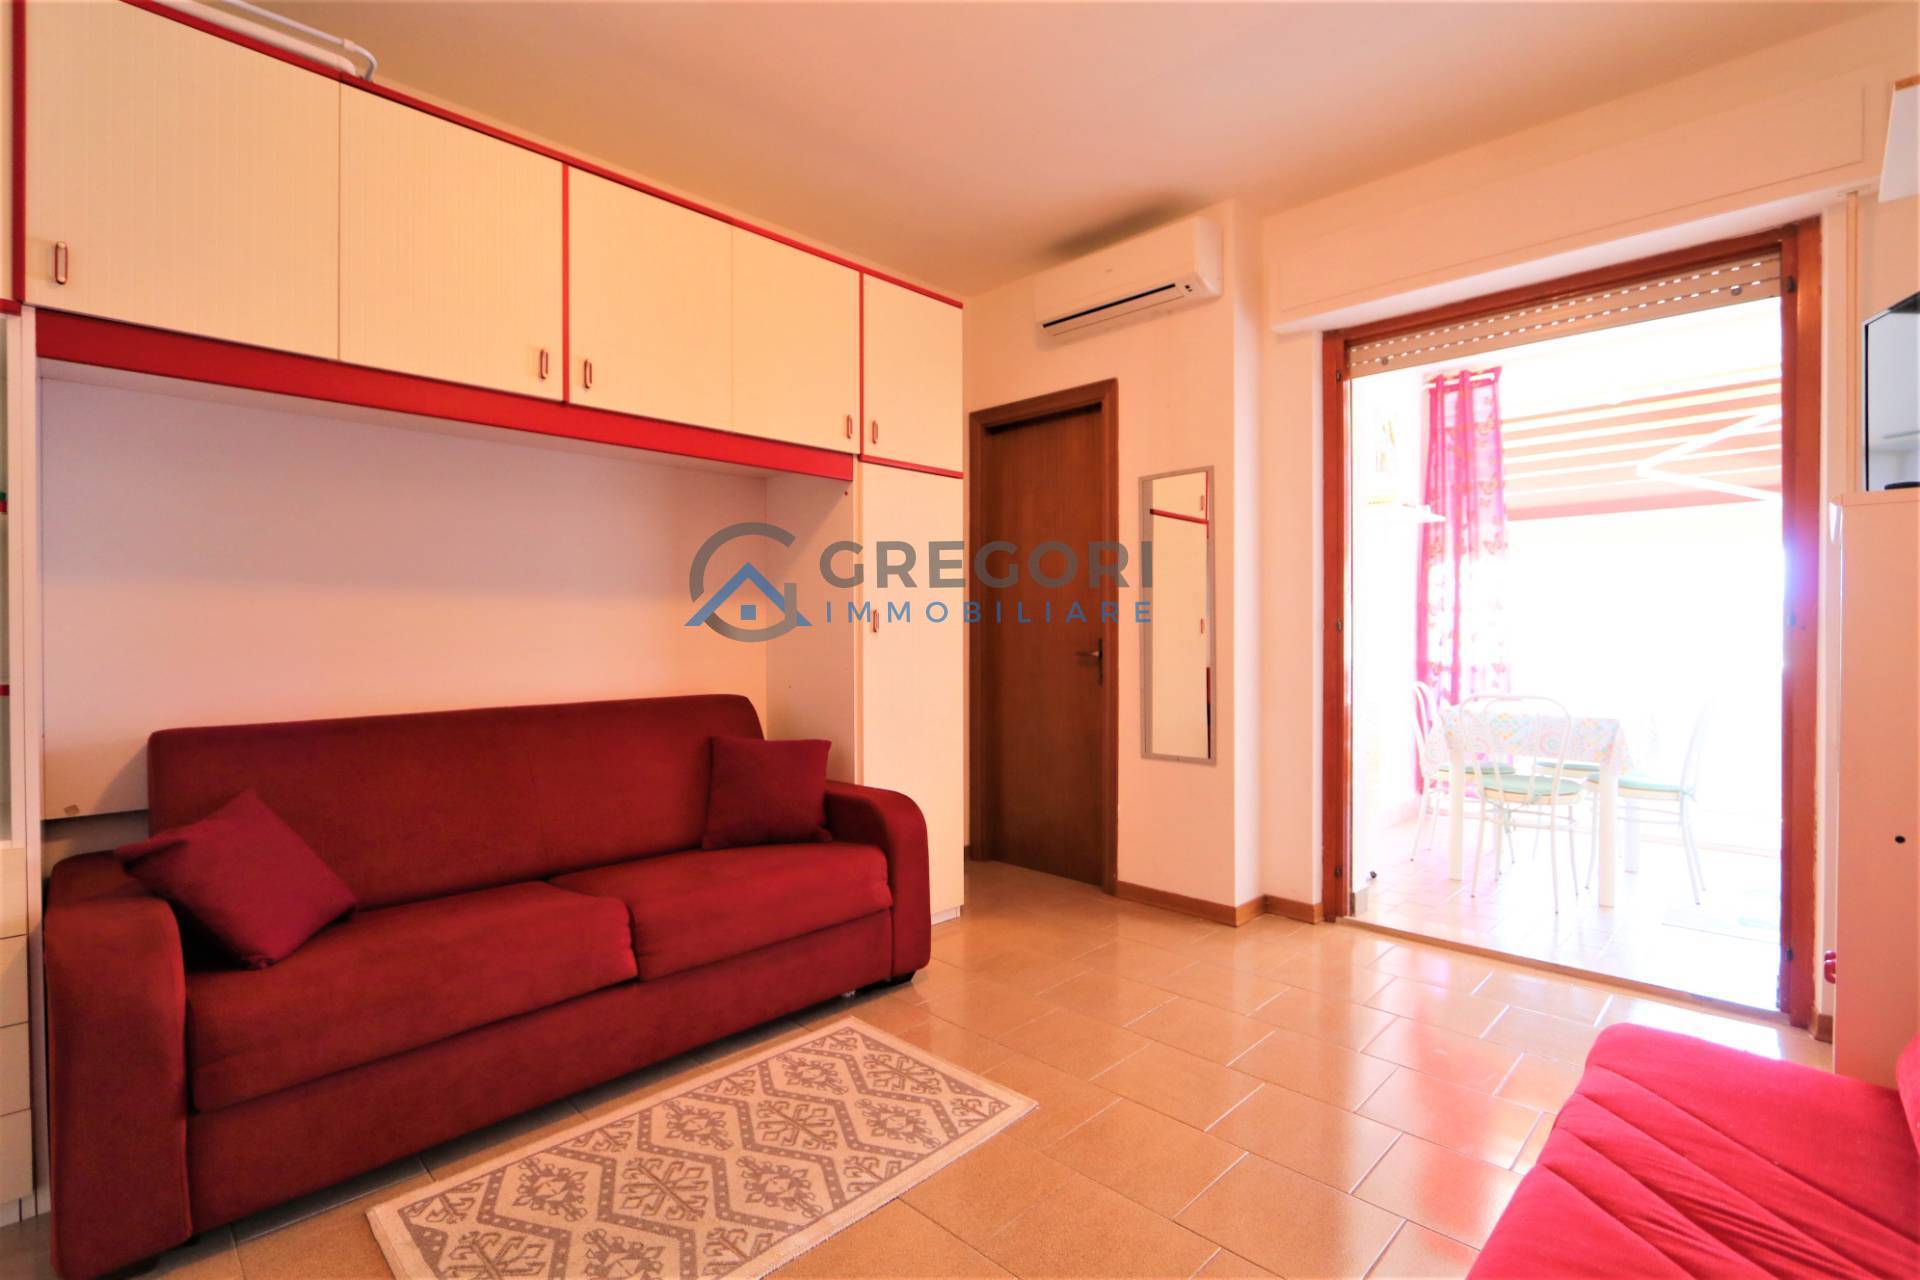 Appartamento in vendita a Martinsicuro, 1 locali, zona Località: VillaRosa, prezzo € 69.000 | PortaleAgenzieImmobiliari.it